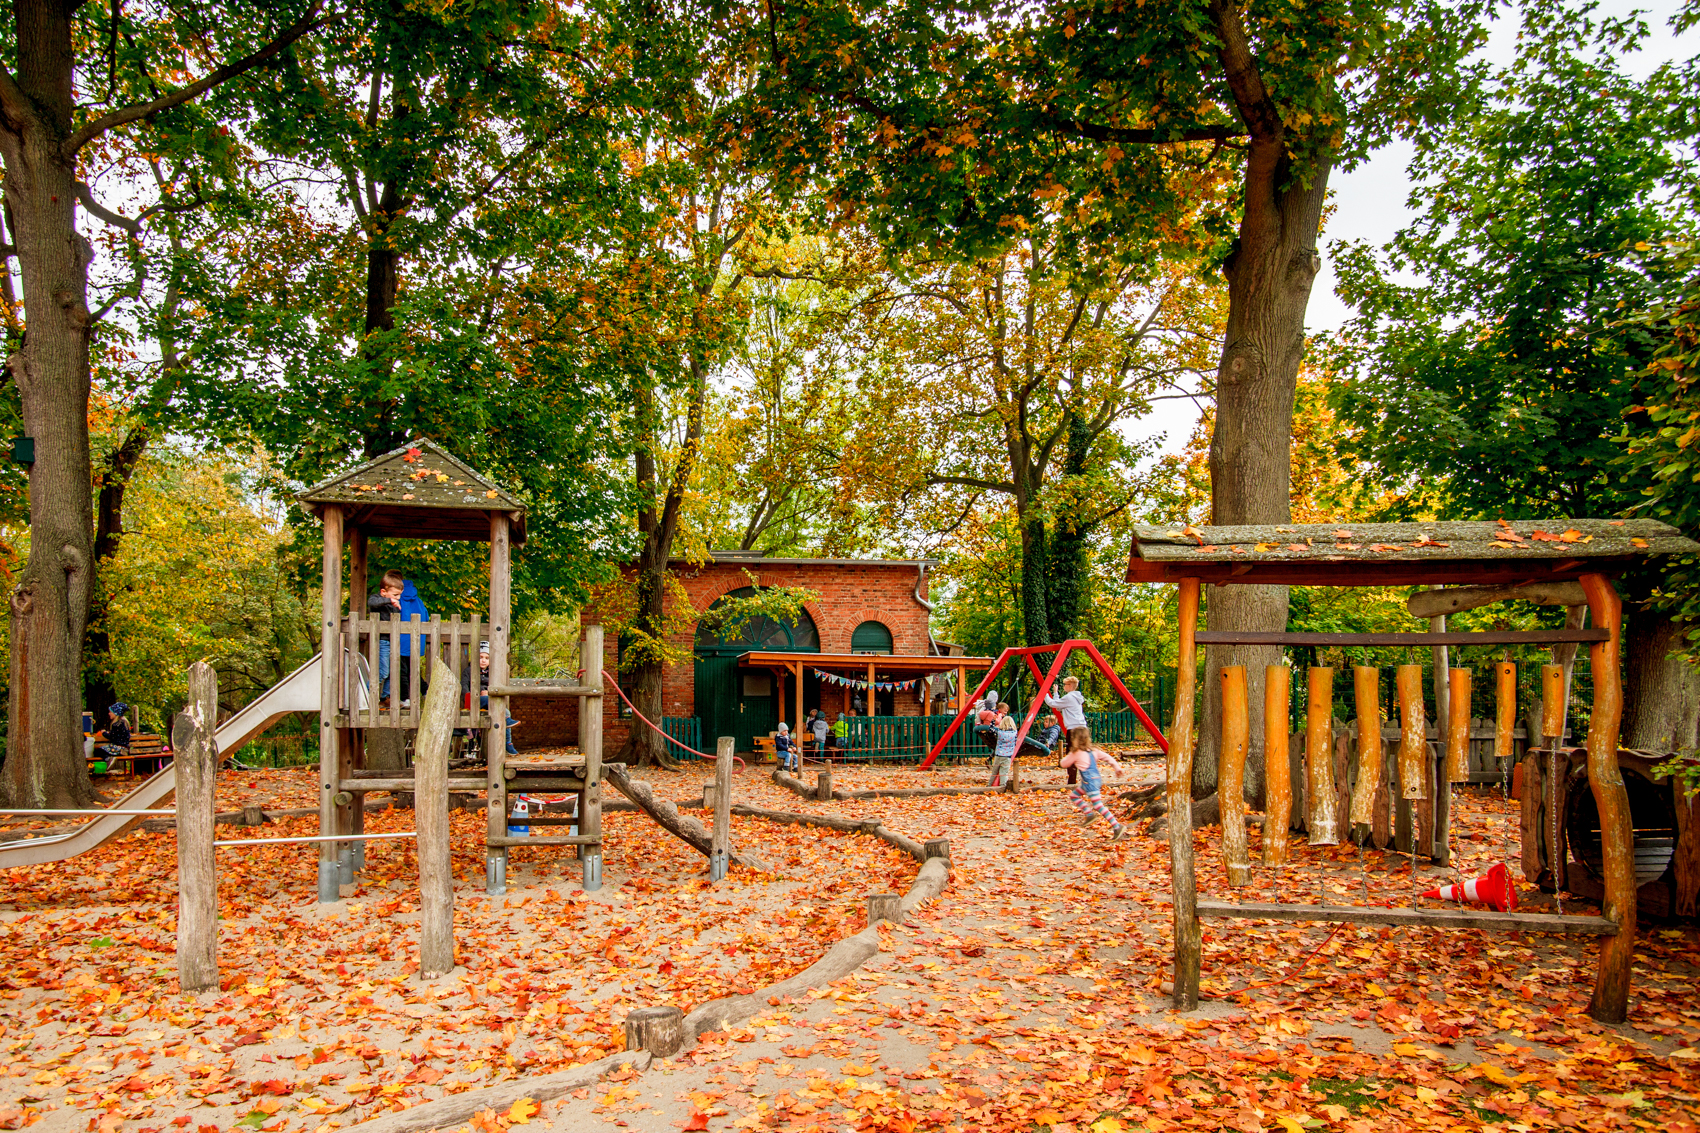 Spielplatz unter Bäumen mit viel Herbstlaub